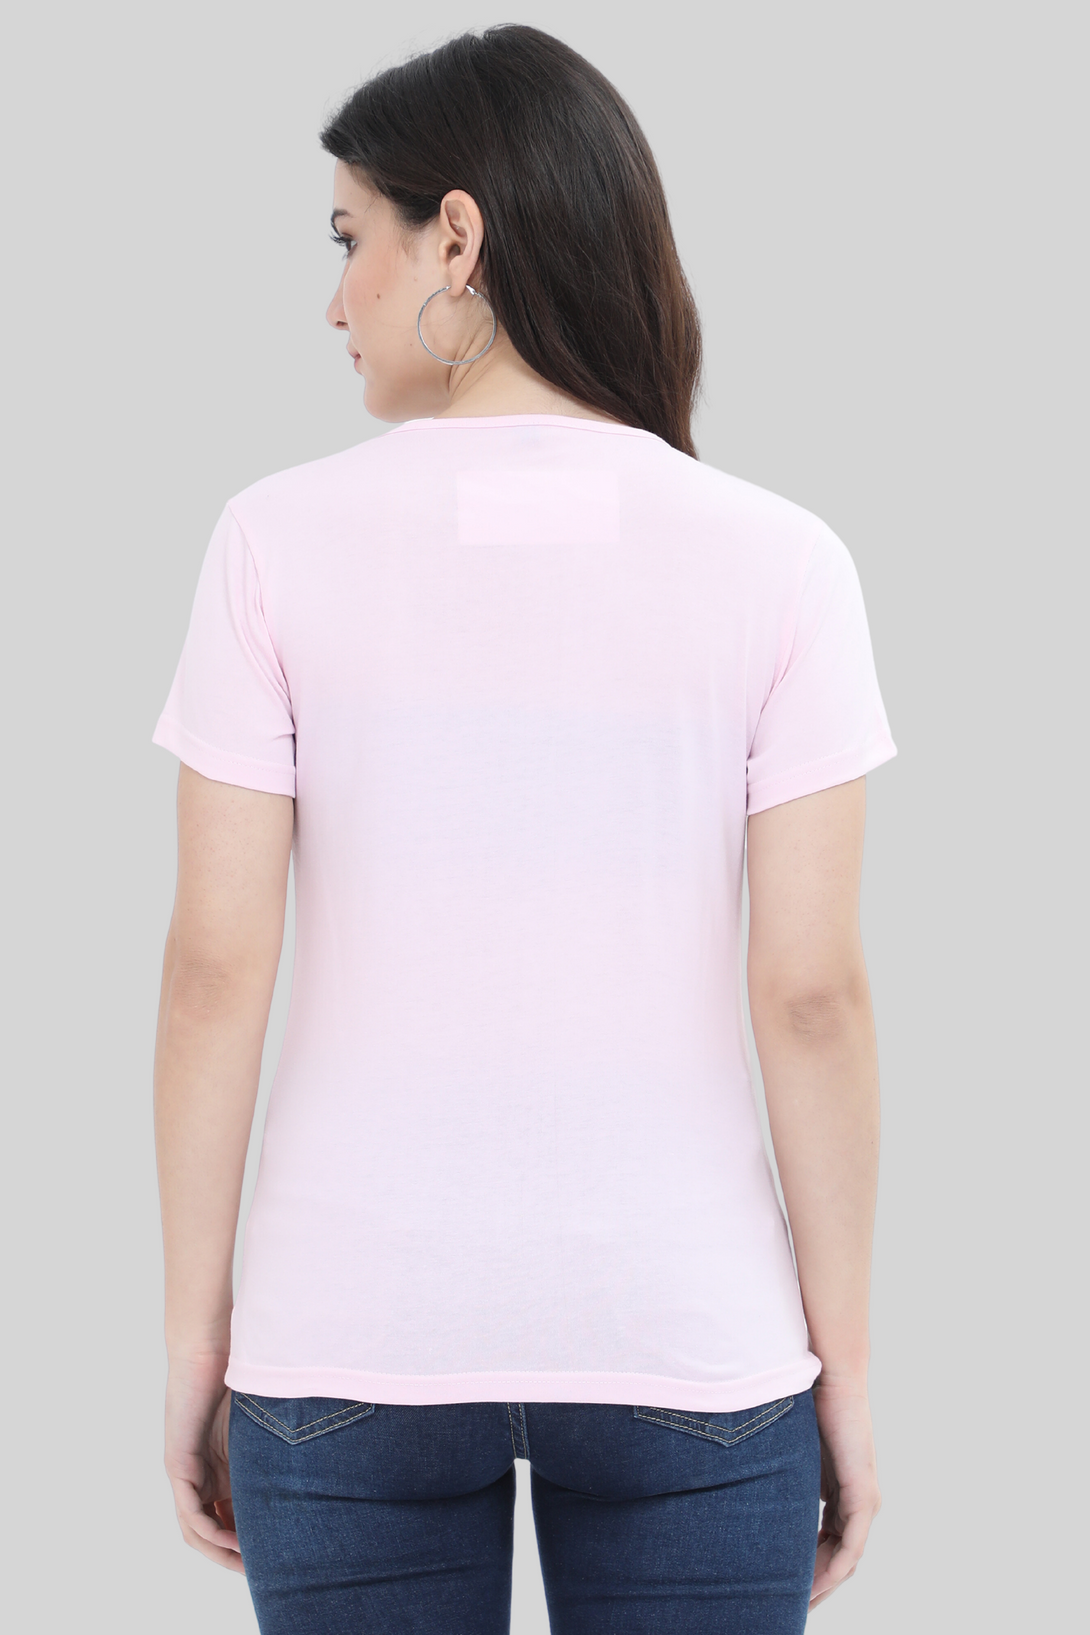 Light Pink Scoop Neck T-Shirt For Women - WowWaves - 1